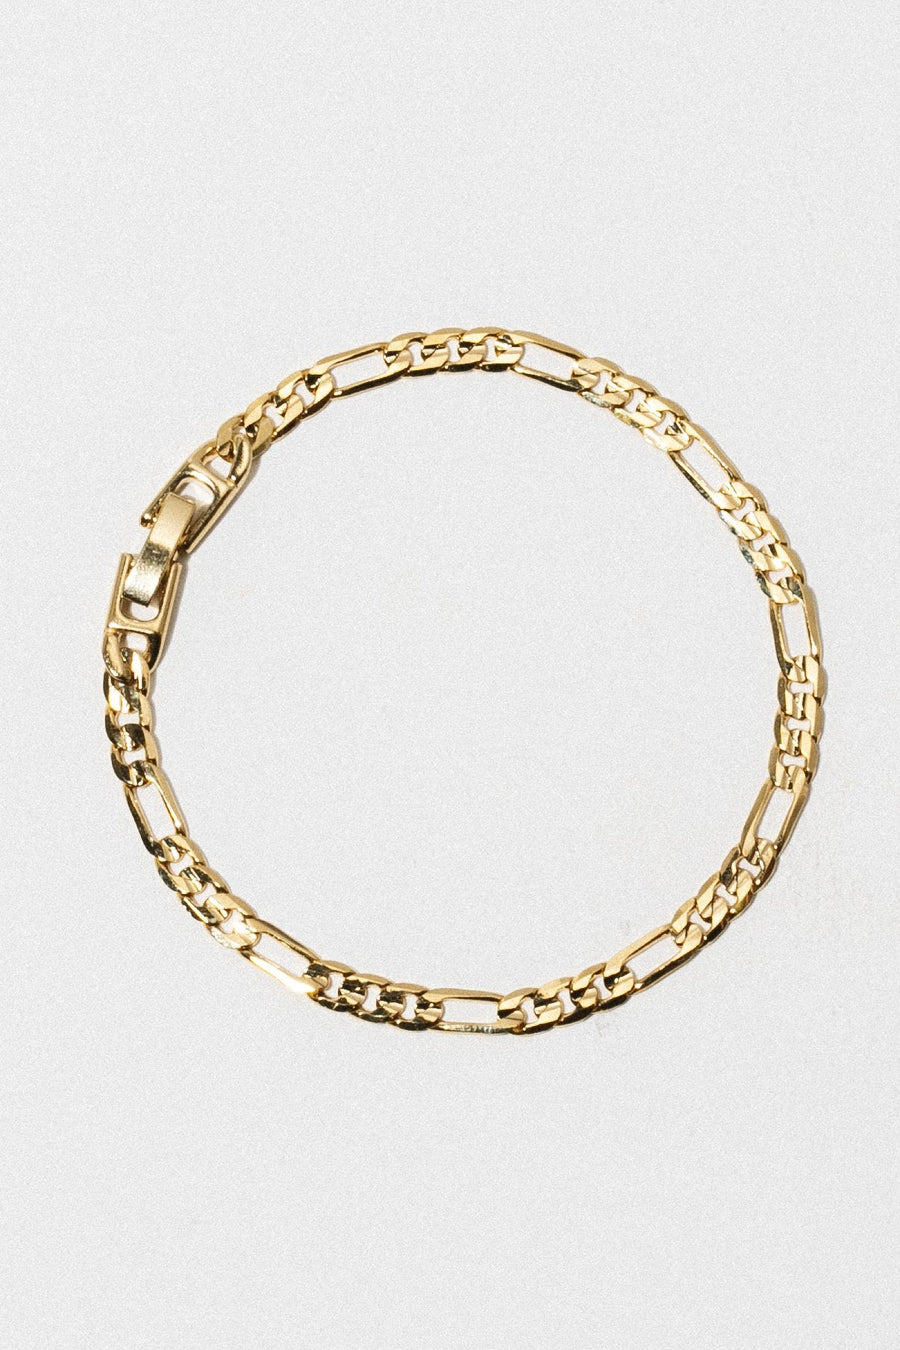 Sparrow Jewelry Gold Figaro Chain Bracelet